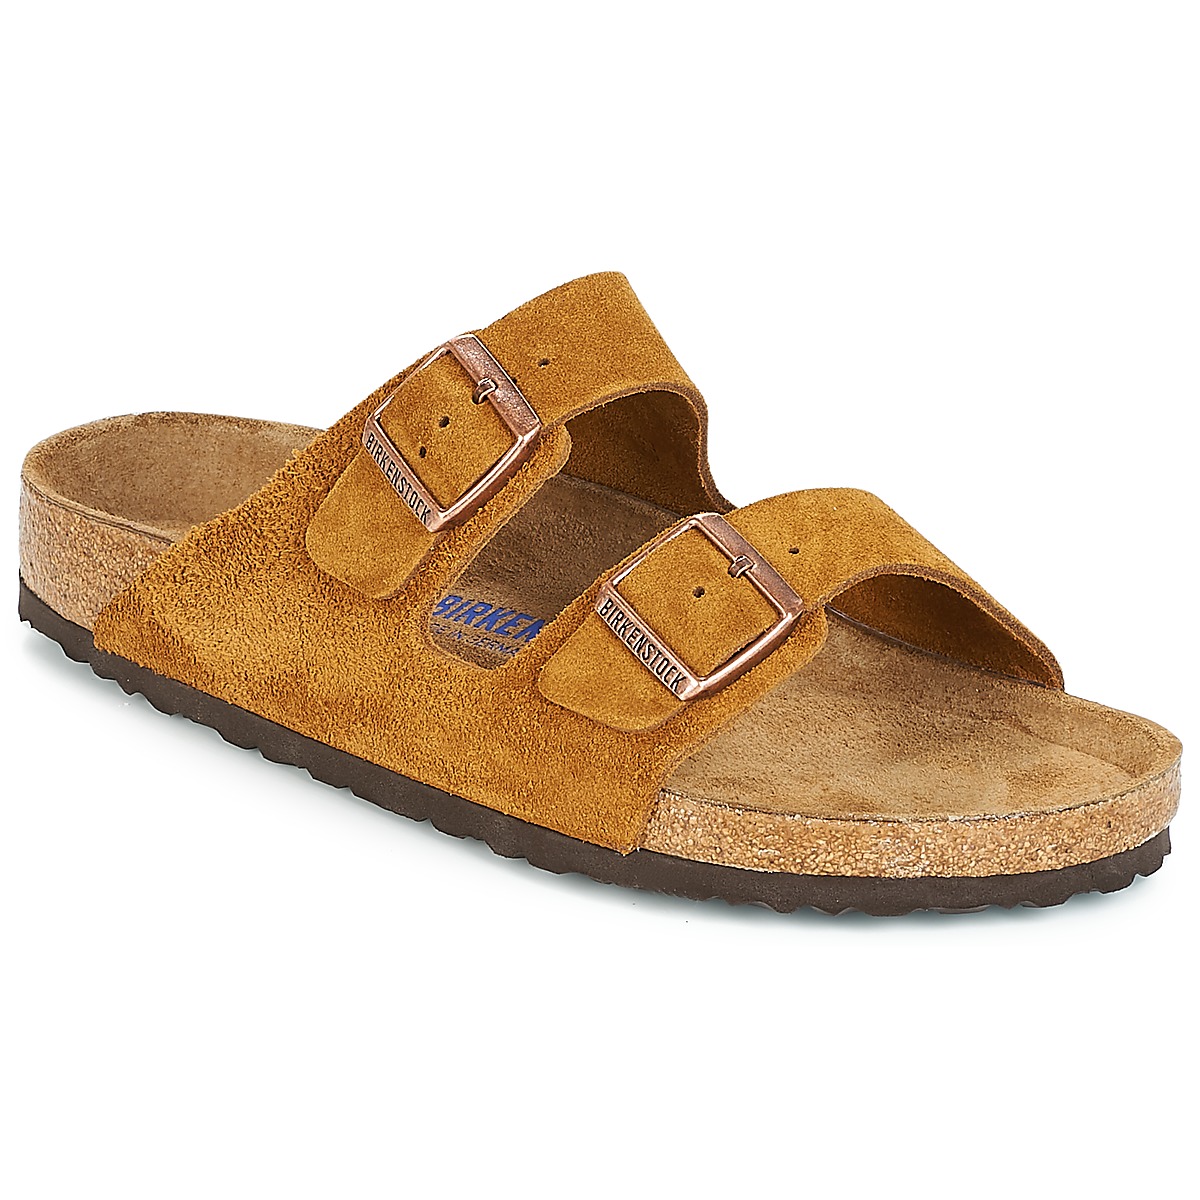 Birkenstock Arizona bruin suède zacht voetbed regular sandalen uni (1009526)